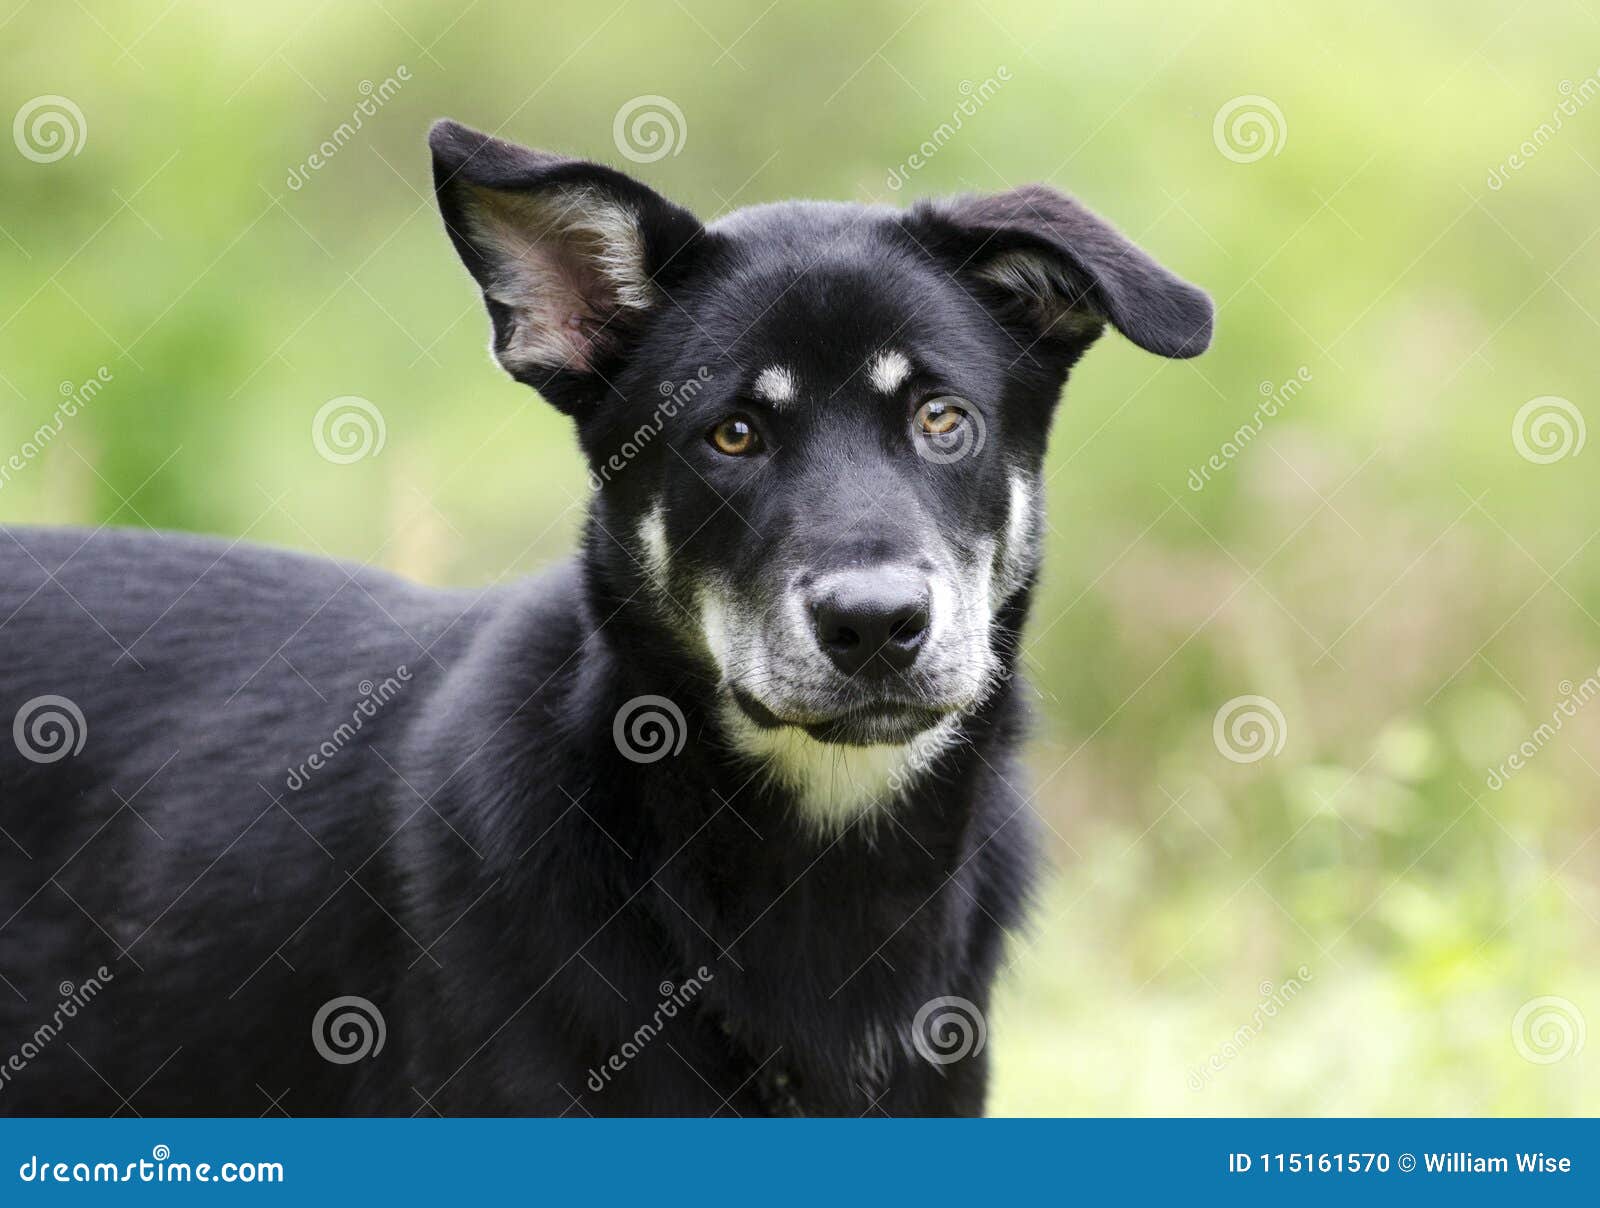 Husky Mix Breed Dog Pet Rescue Adoption Photography Stock Photo Image Of Girl Leash 115161570